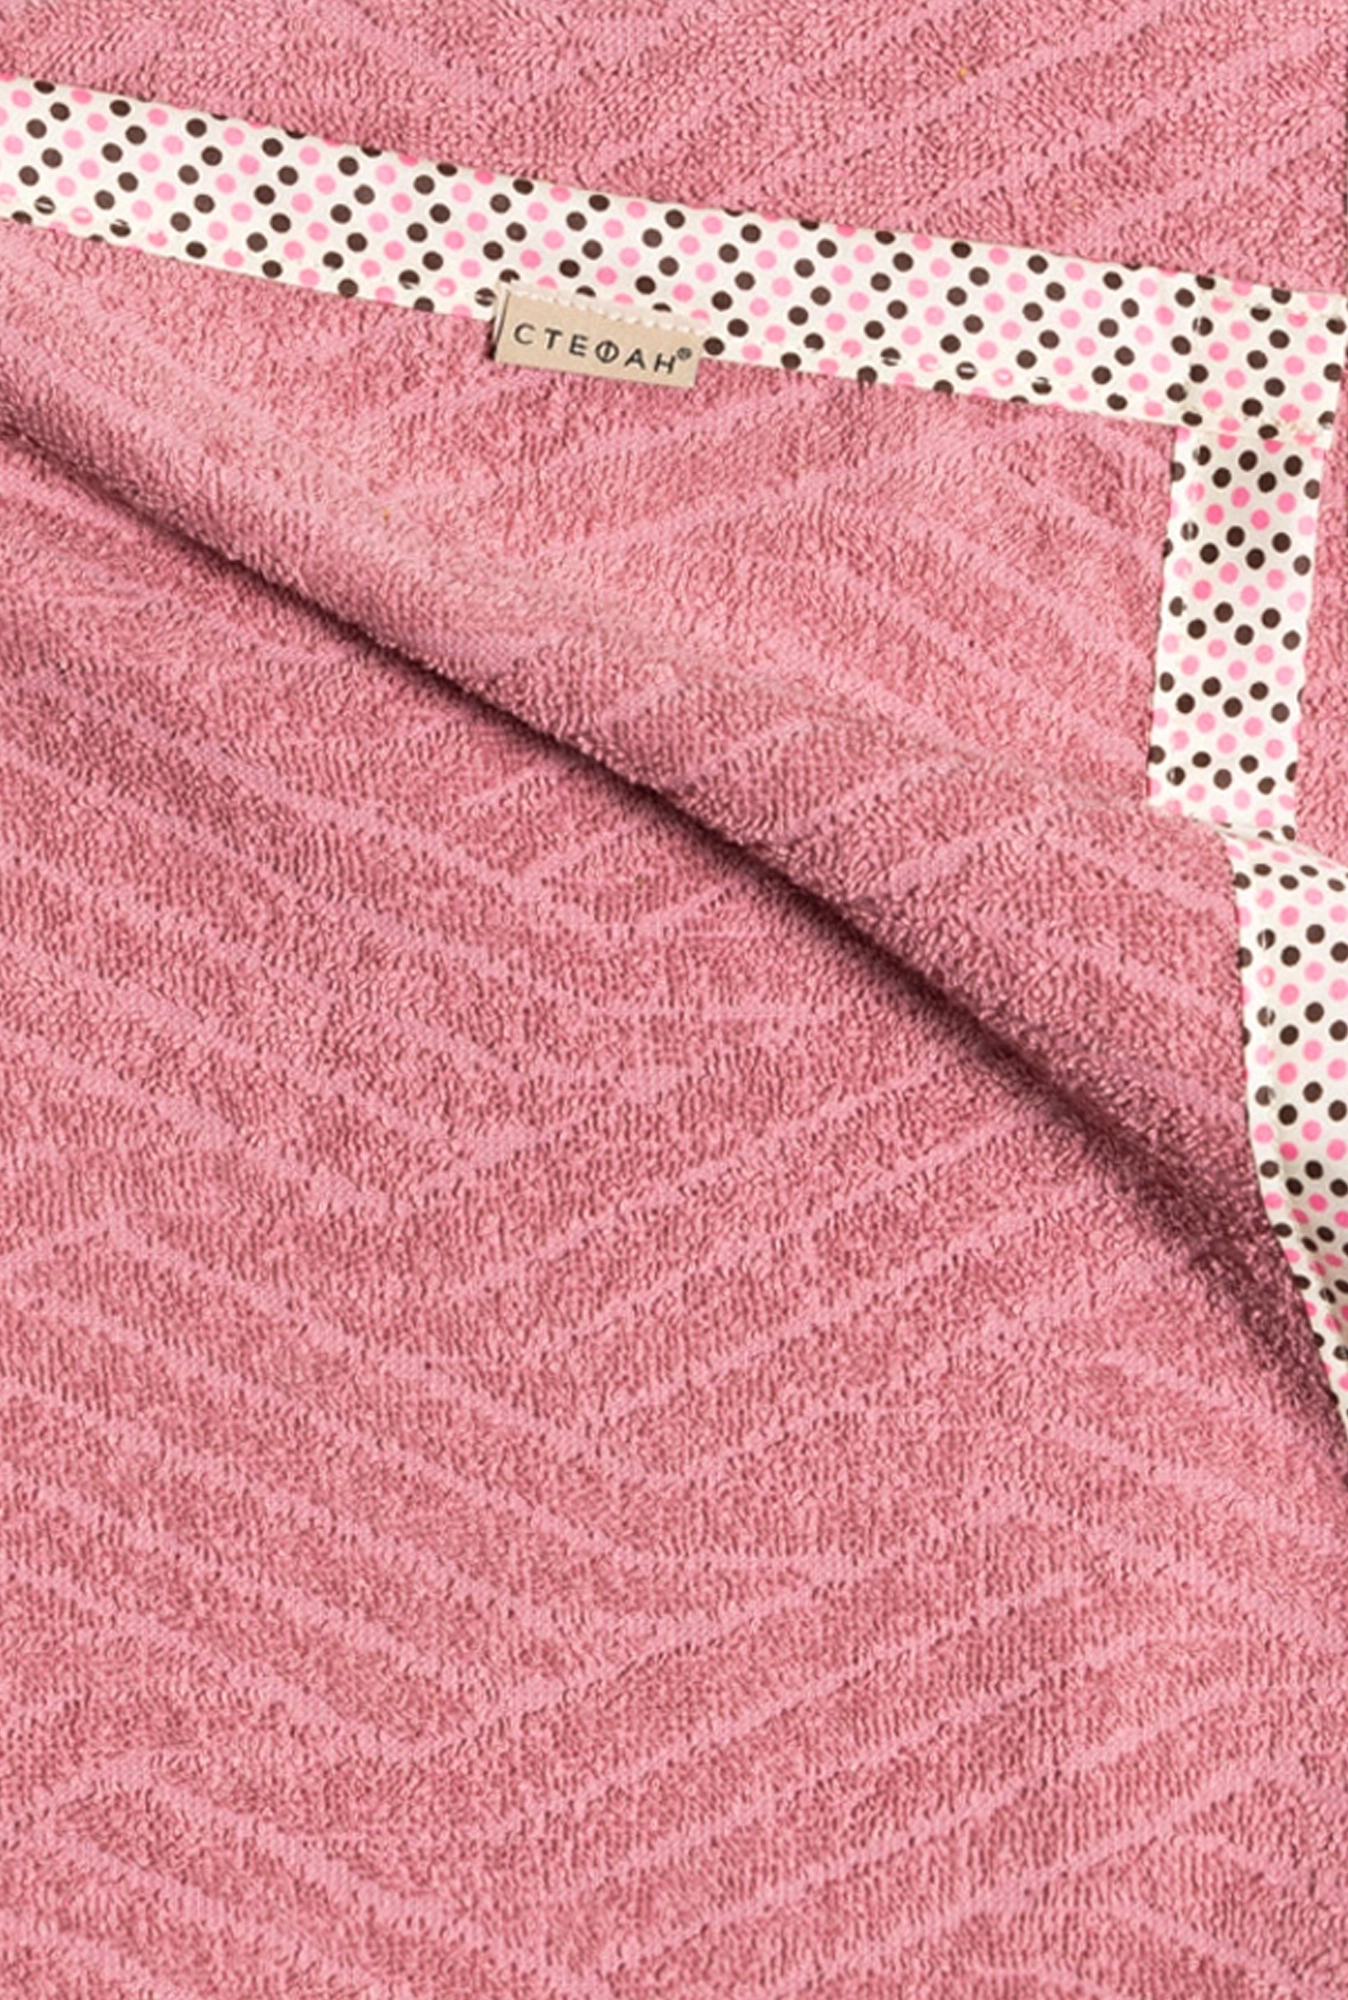 Bebi prekrivač frotir roze